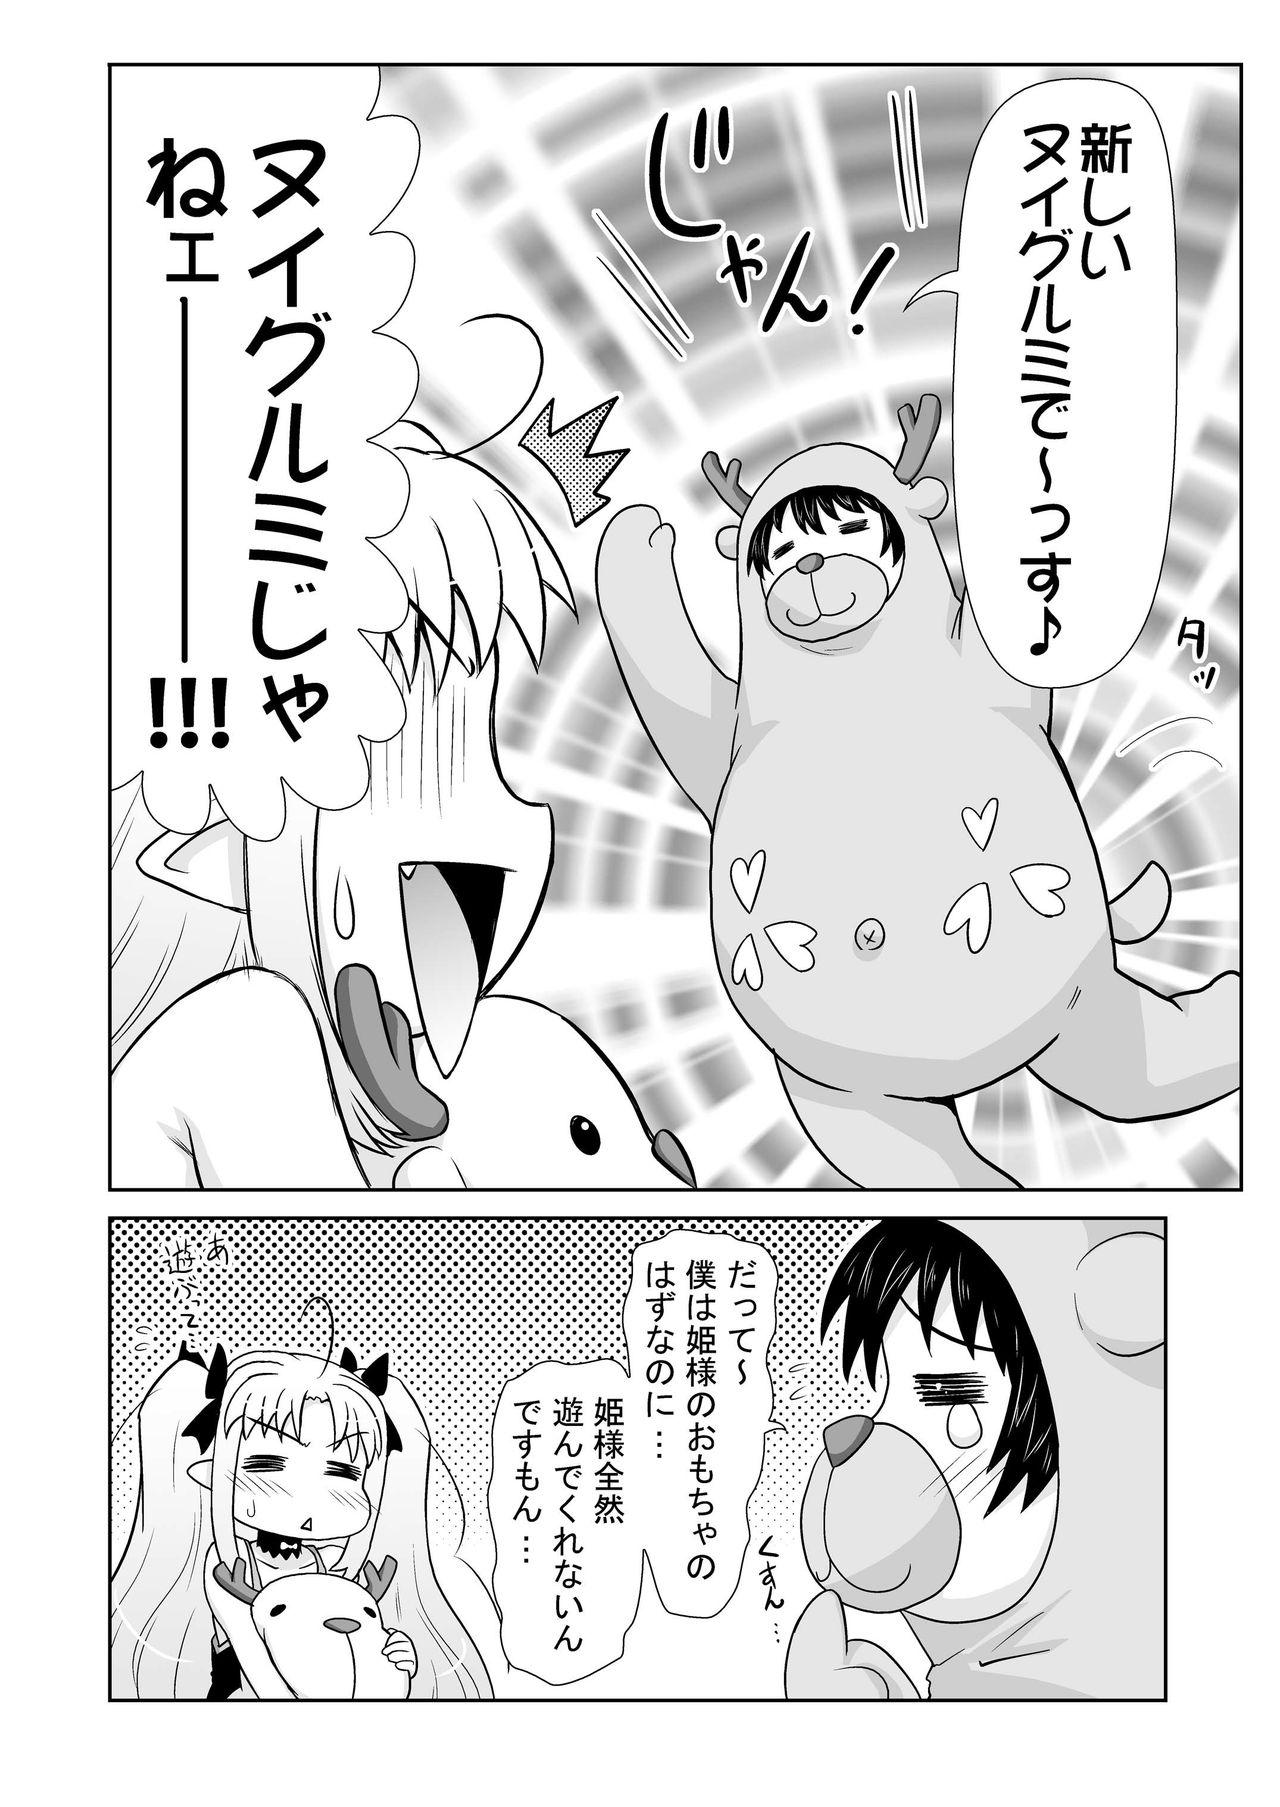 Web Cam Boku wa Lotte-sama no Omocha desu ga, Nani ka? - Lotte no omocha Hot Girls Getting Fucked - Page 6